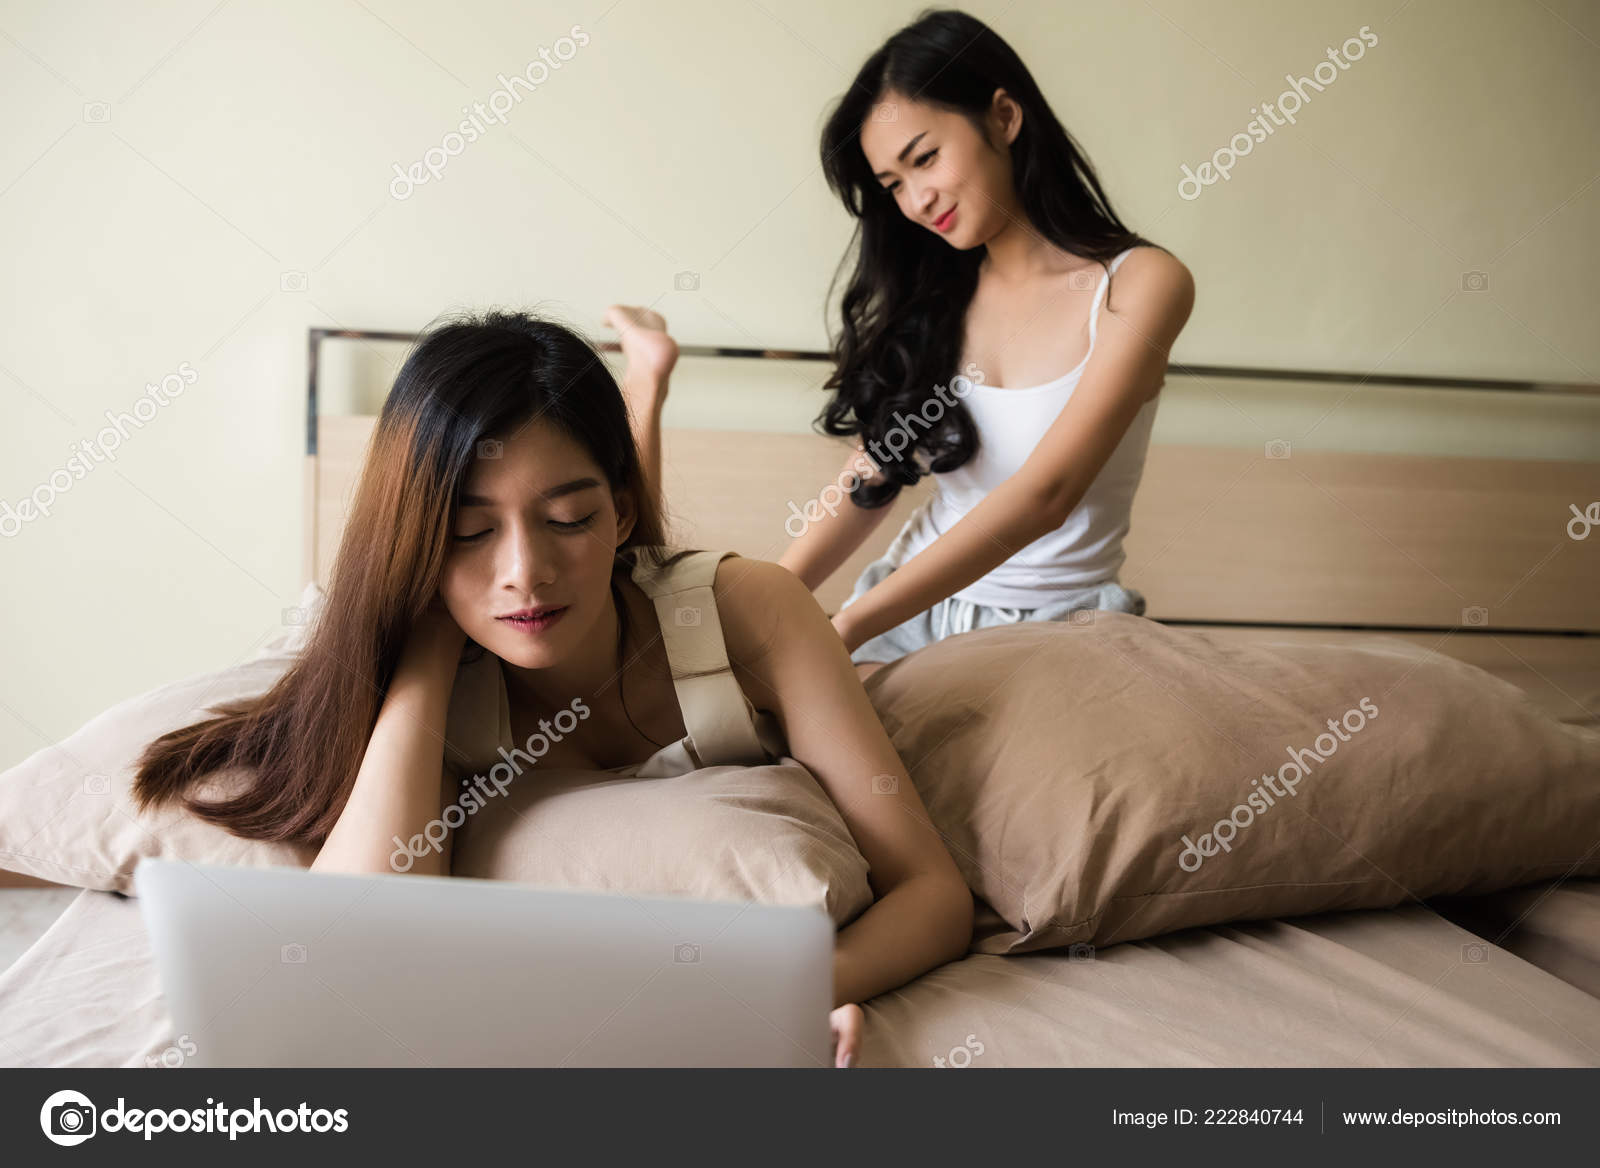 Black Girl Lesbian Massage - Best Sex Photos, Hot Porn ...